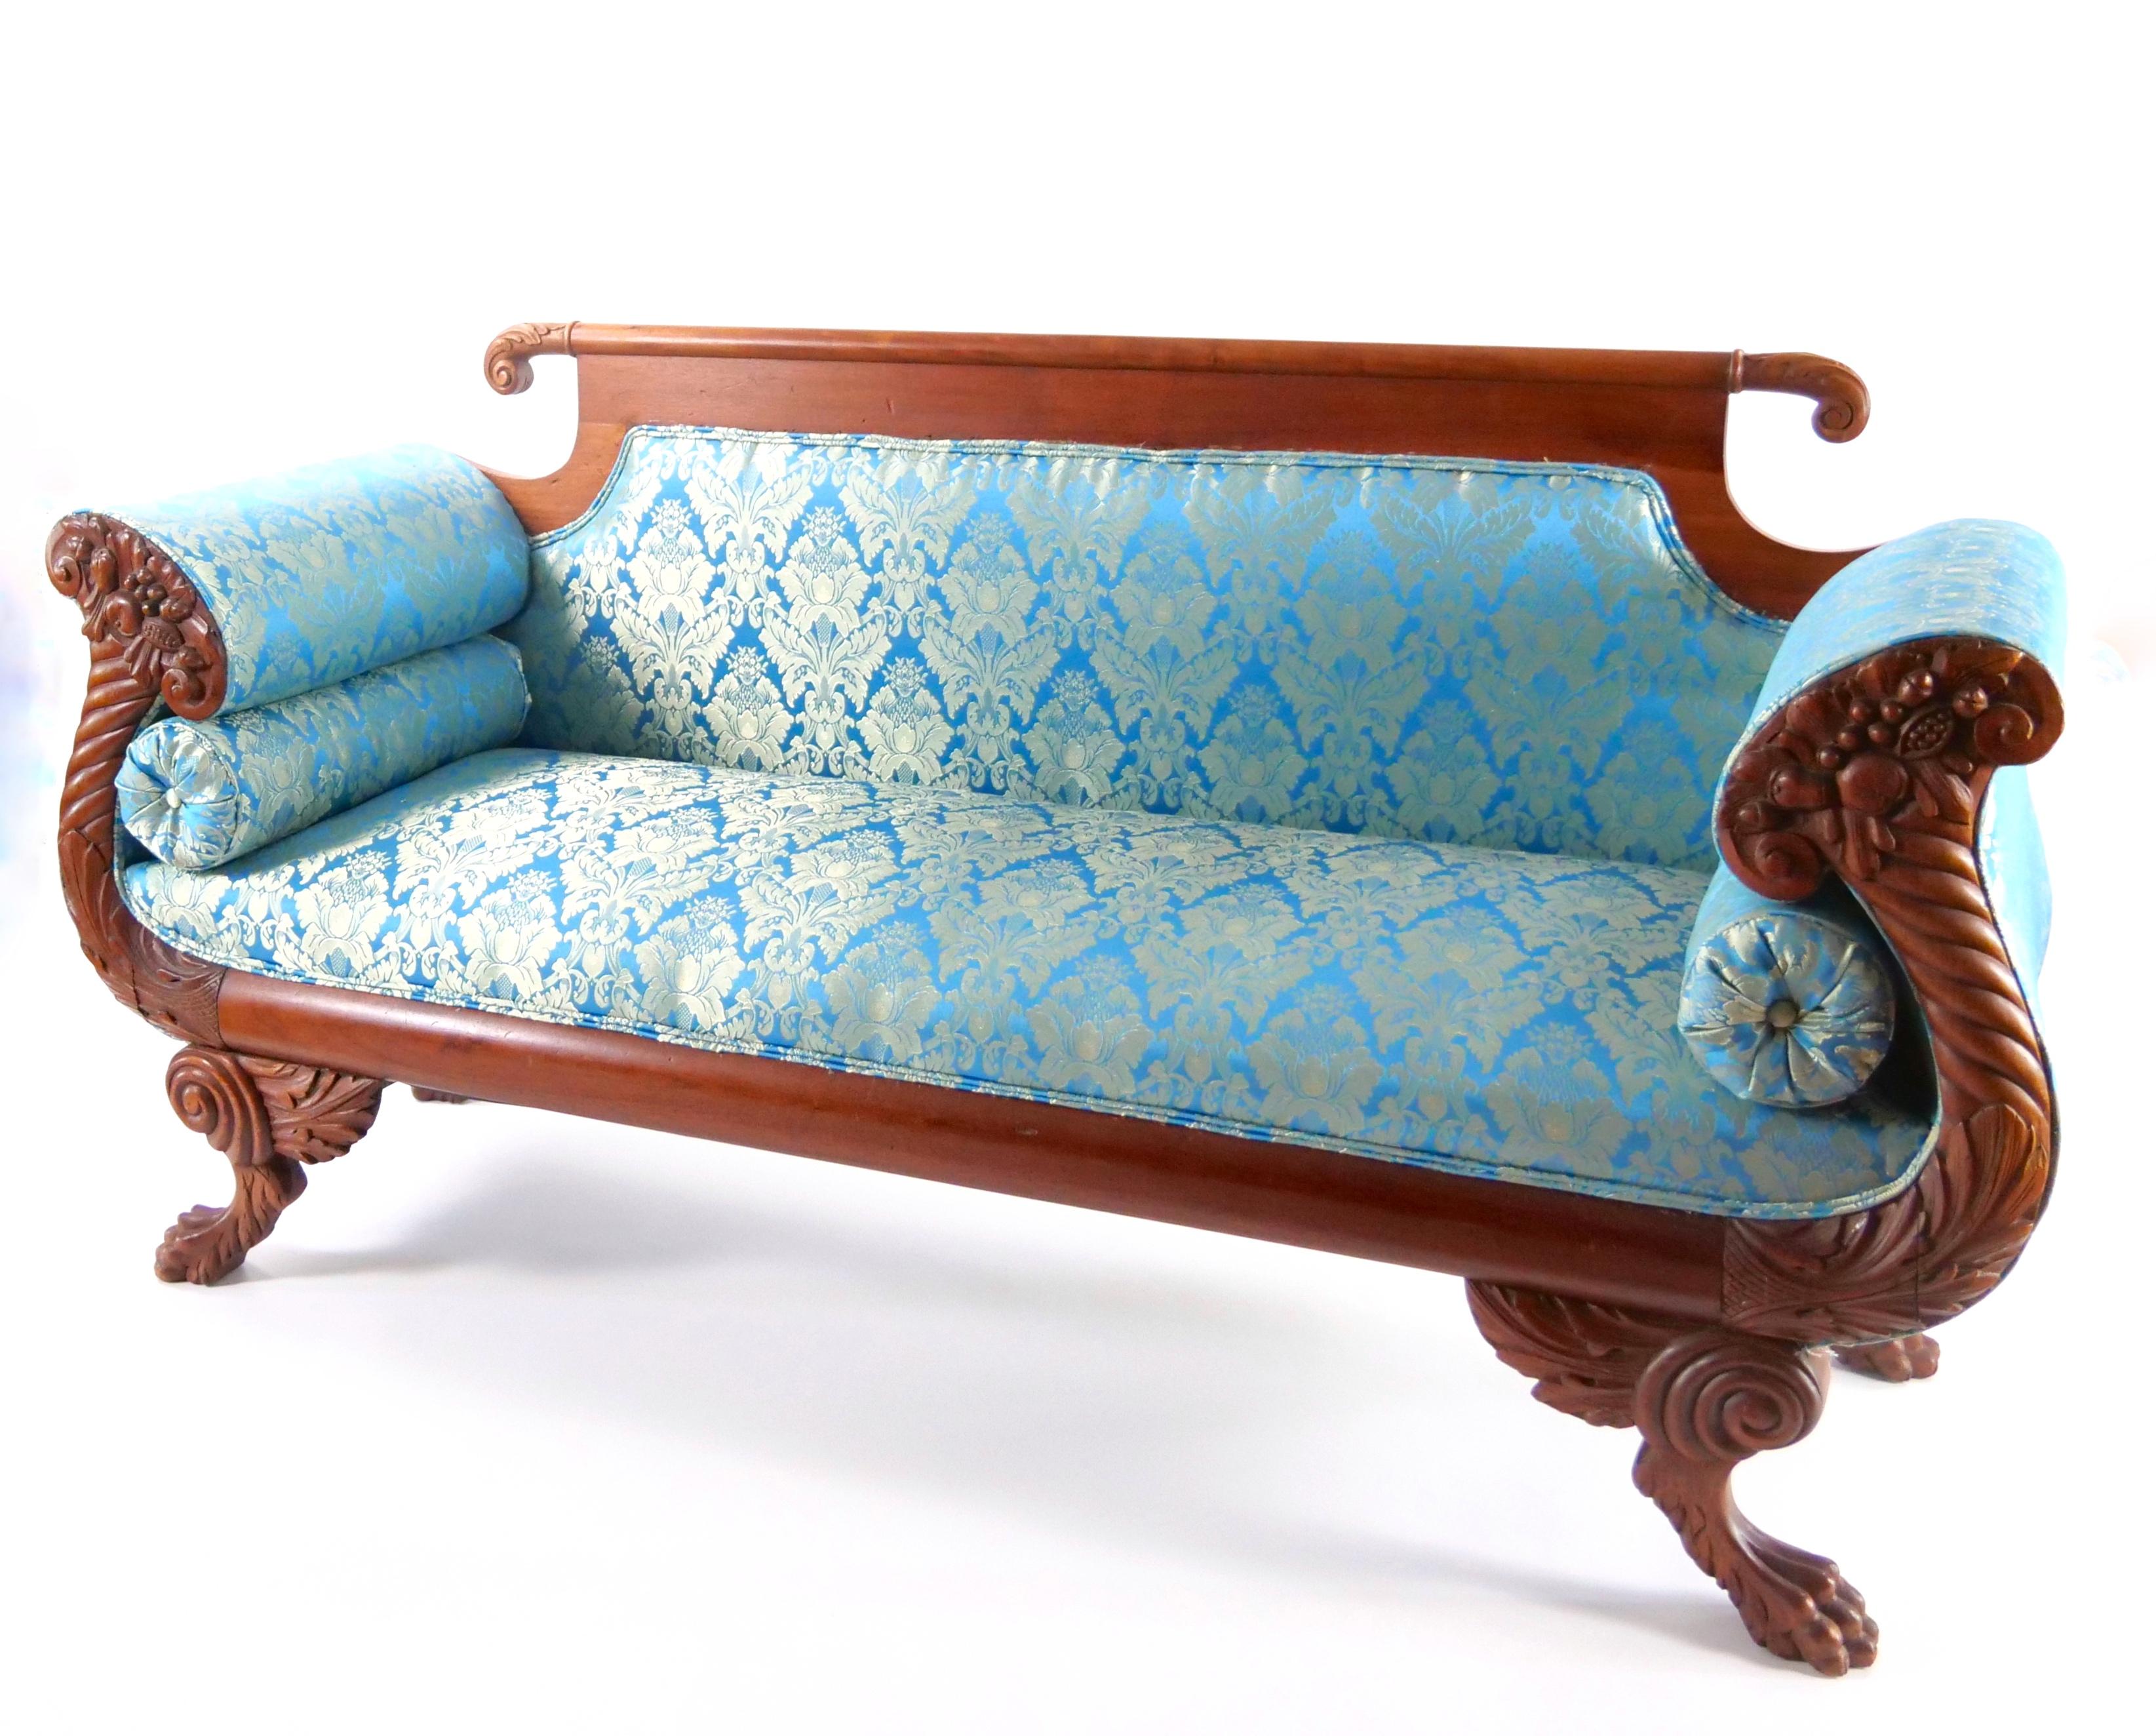 Plongez dans le charme du 19e siècle avec notre magnifique canapé nord-américain de style Empire à armature en bois d'acajou. Cette incarnation de l'élégance intemporelle présente un design de style Eleg, caractérisé par son opulent cadre en acajou,